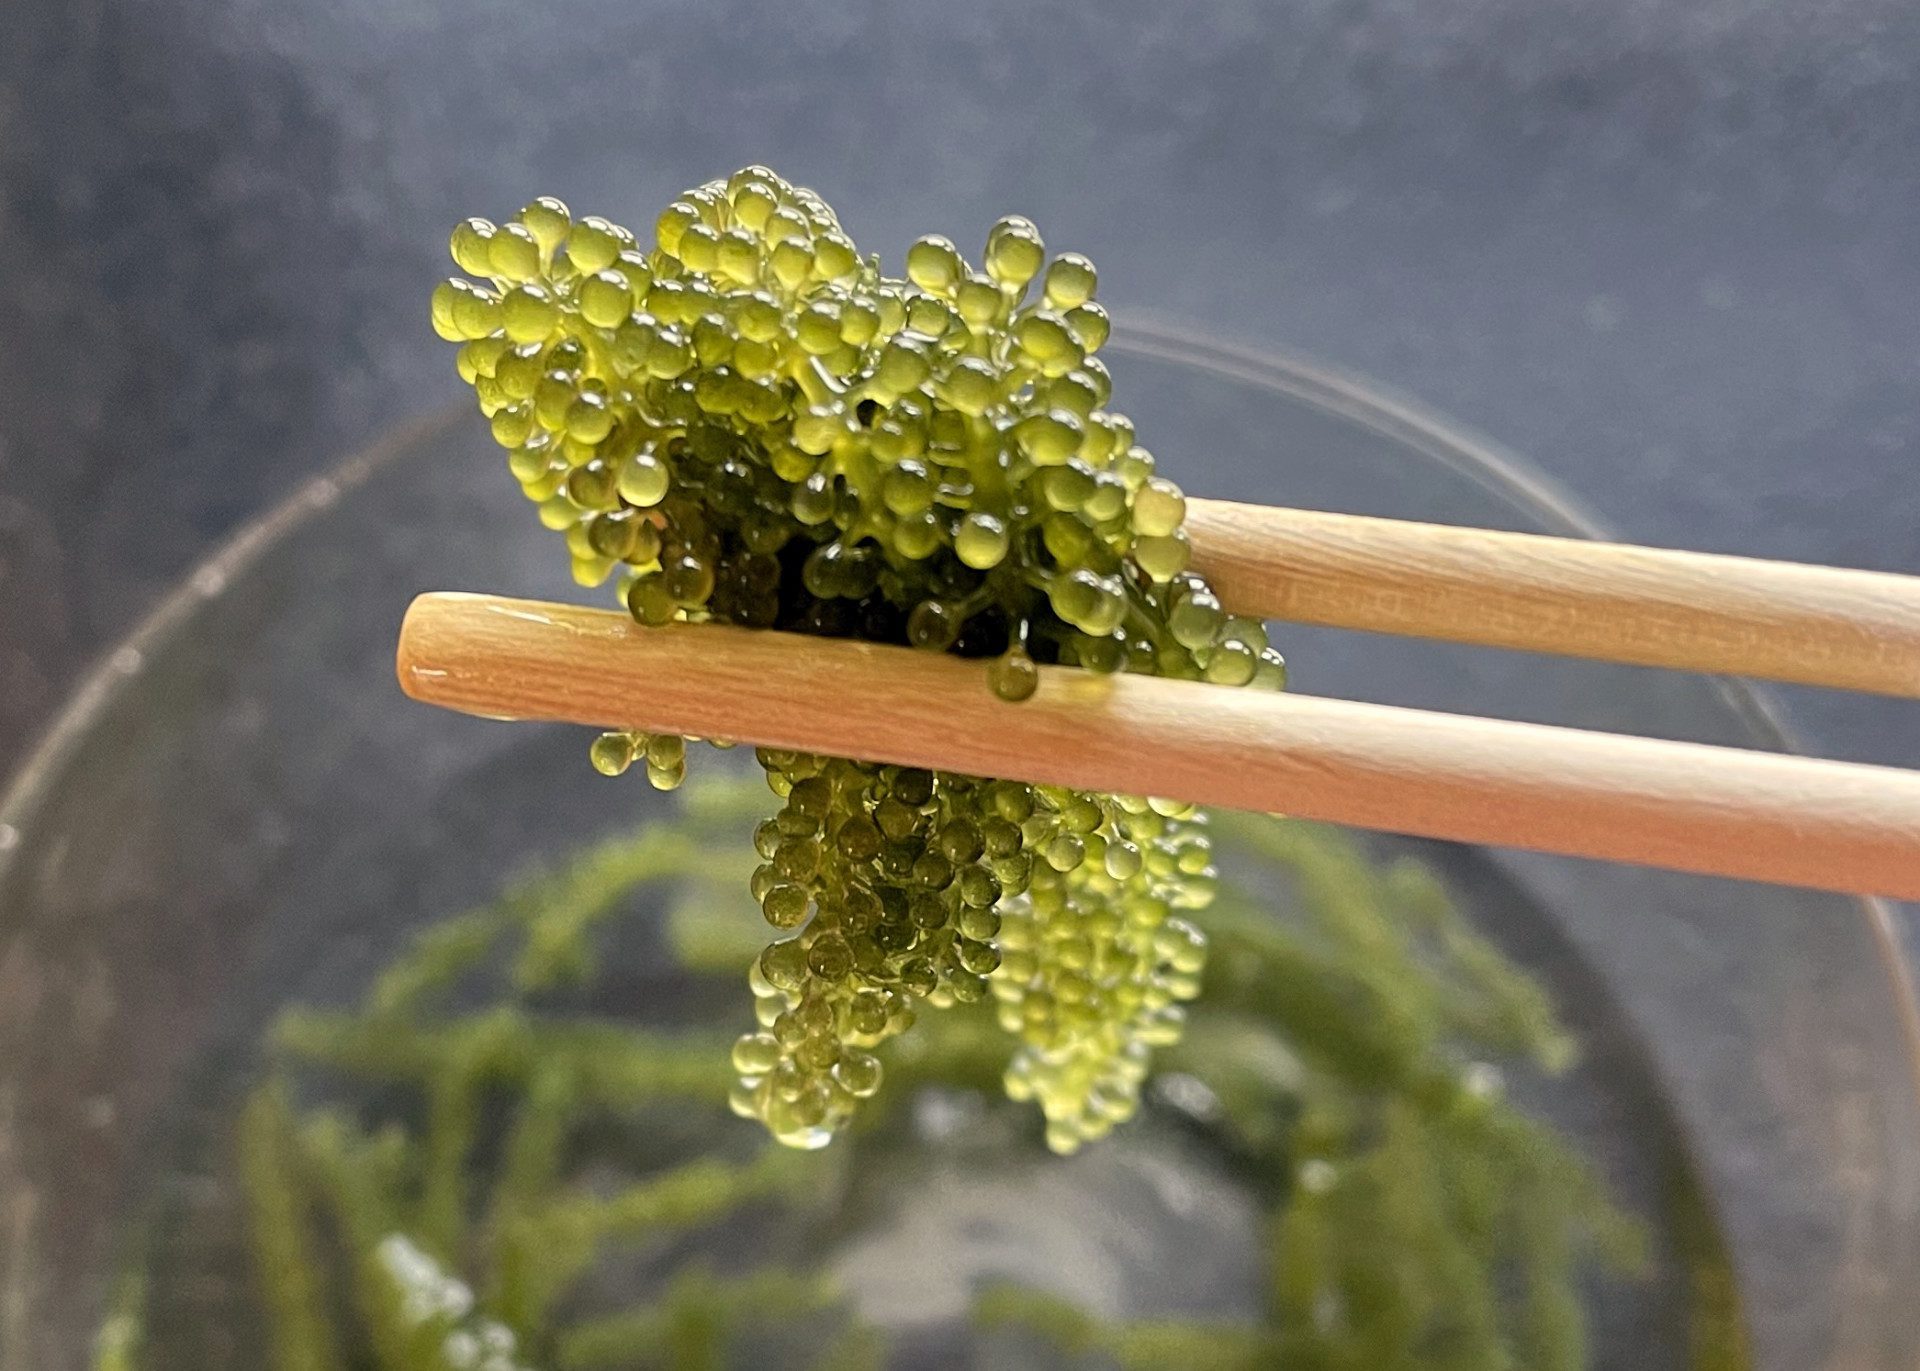 Umibudo-Algen oder Sea Grapes von Ess-Stäbchen gehalten